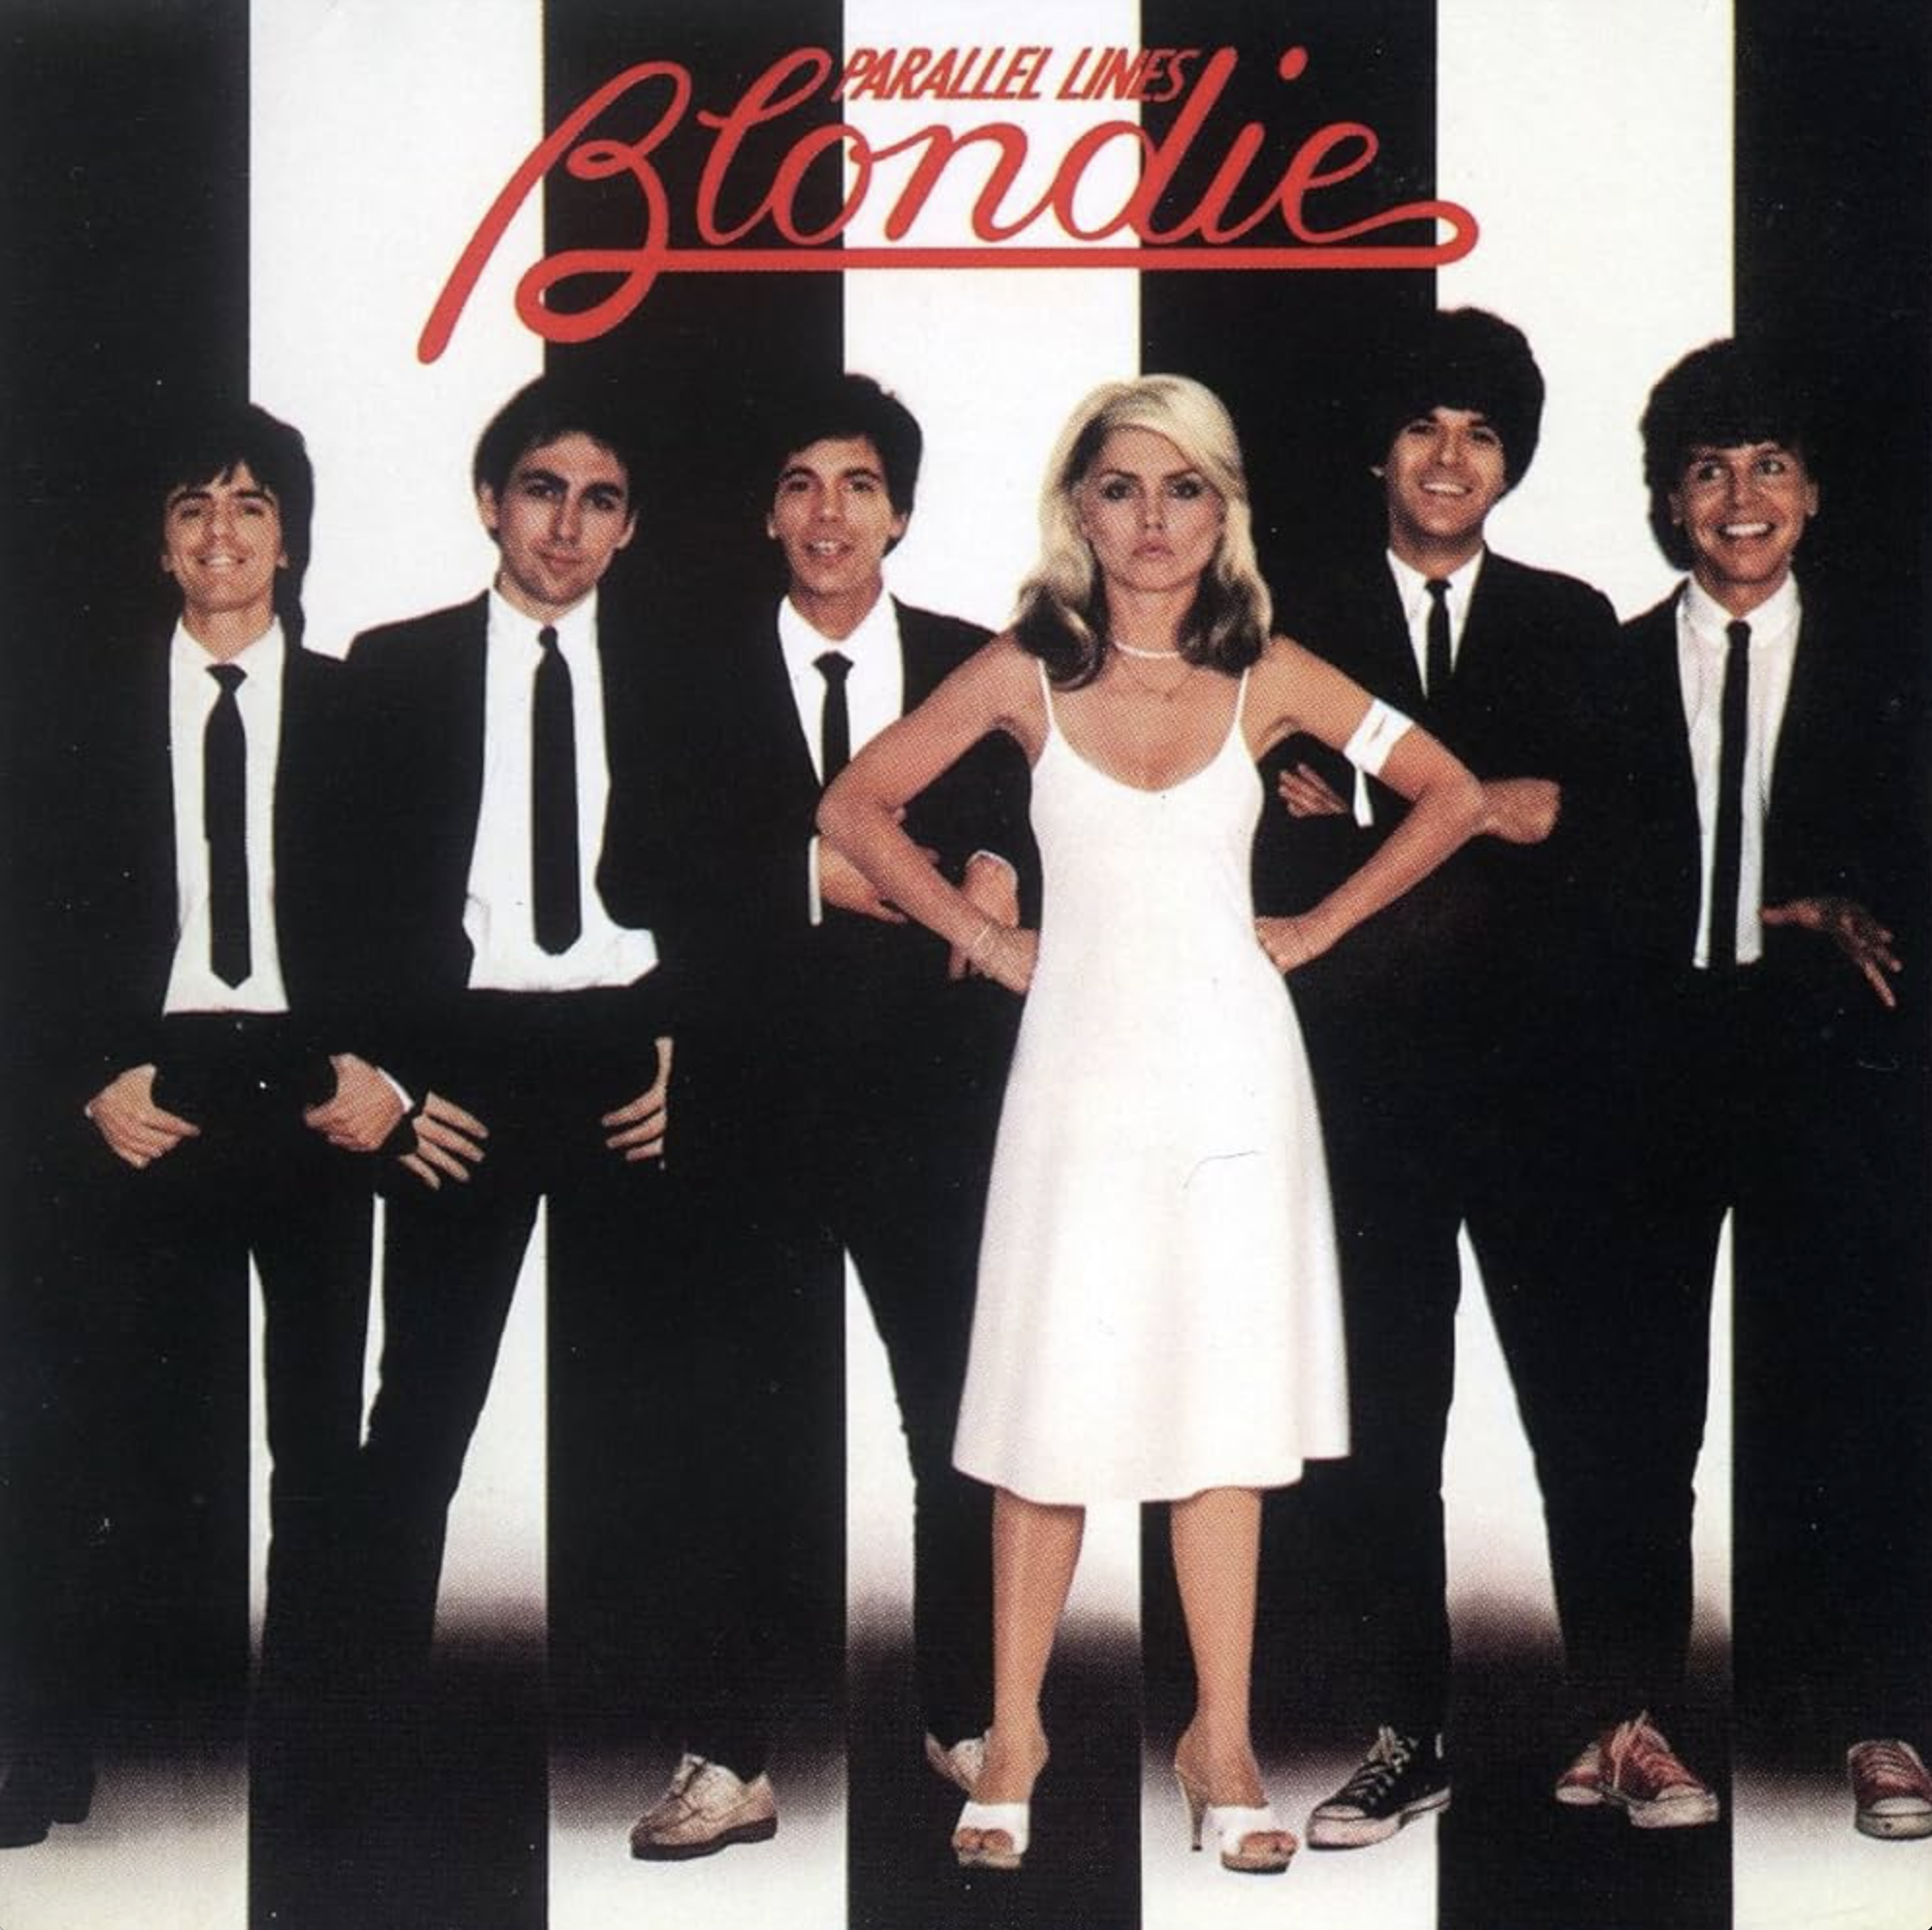 Blondie's "Parallel Lines"